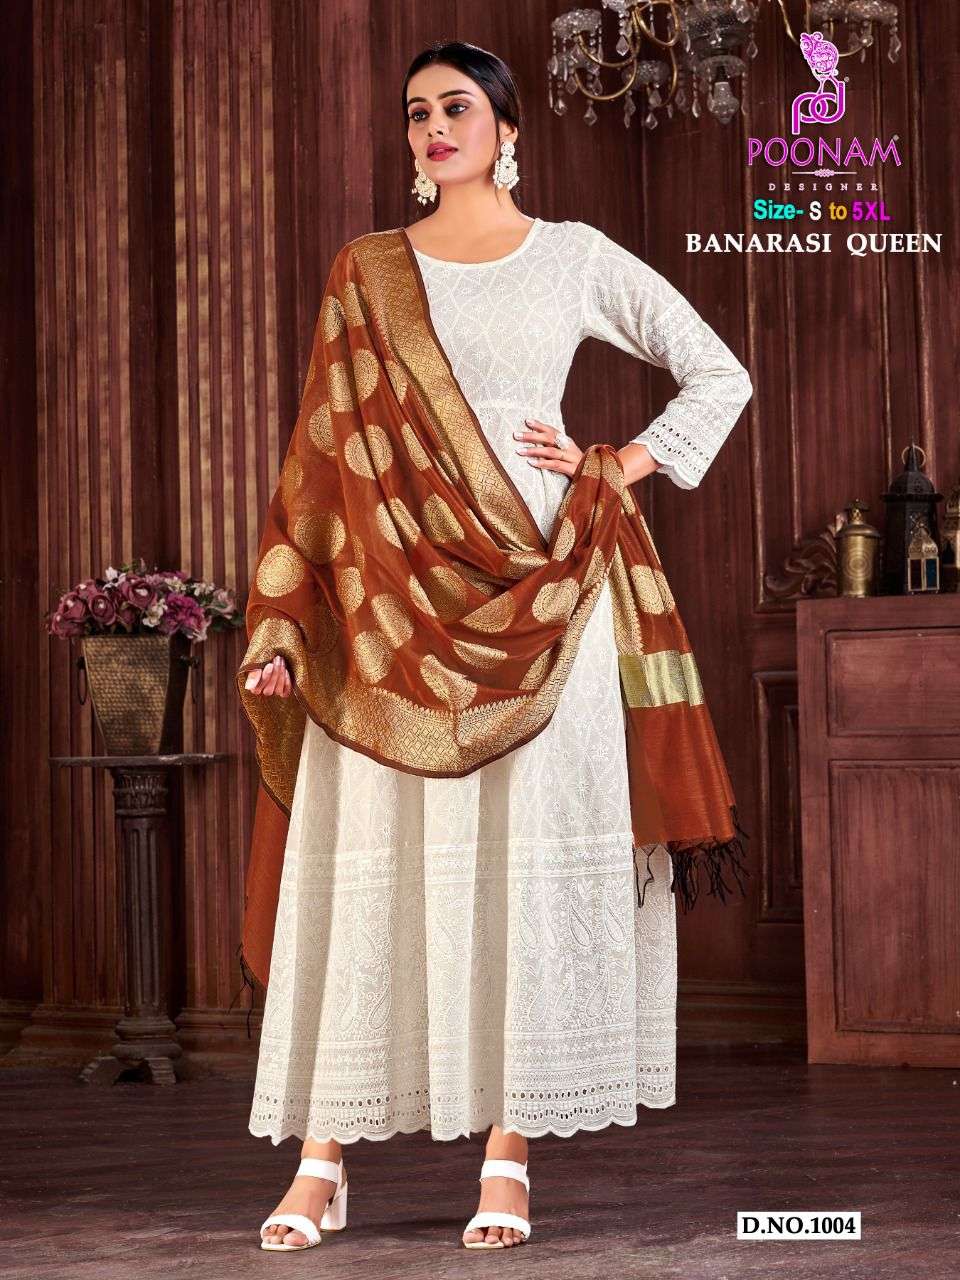 Poonam Designer Banarasi Queen 1004